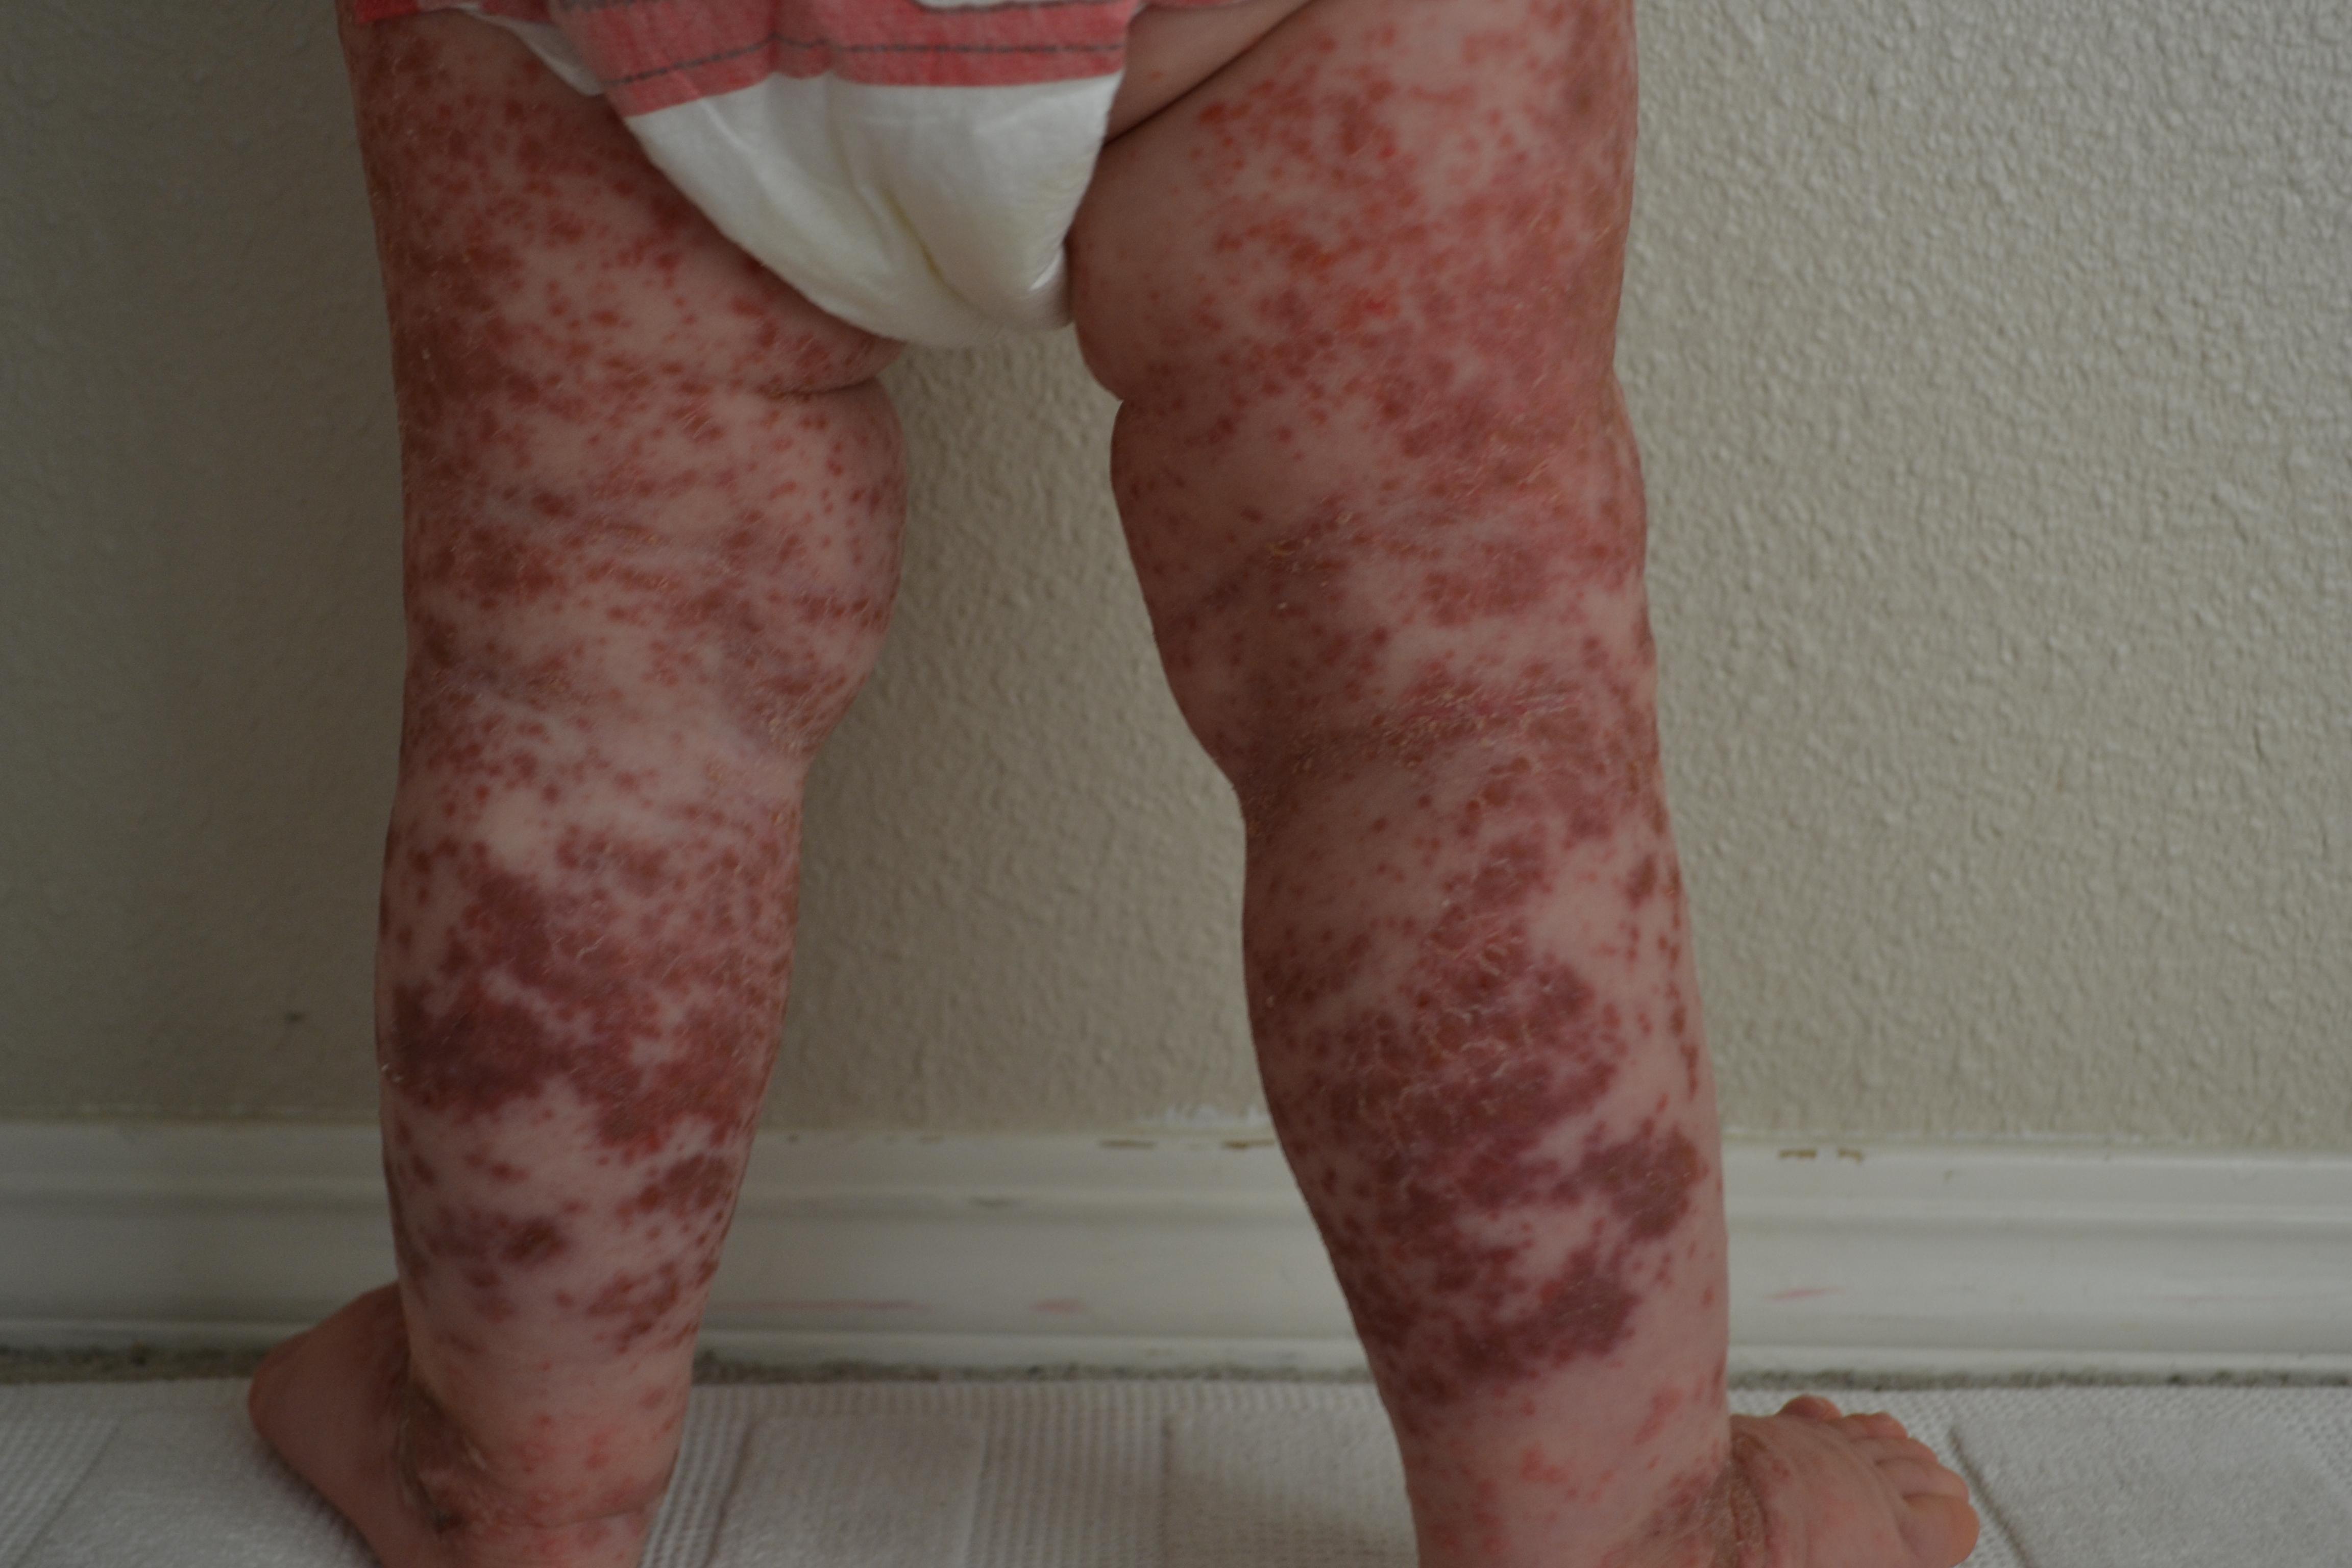 toddler rashes on legs